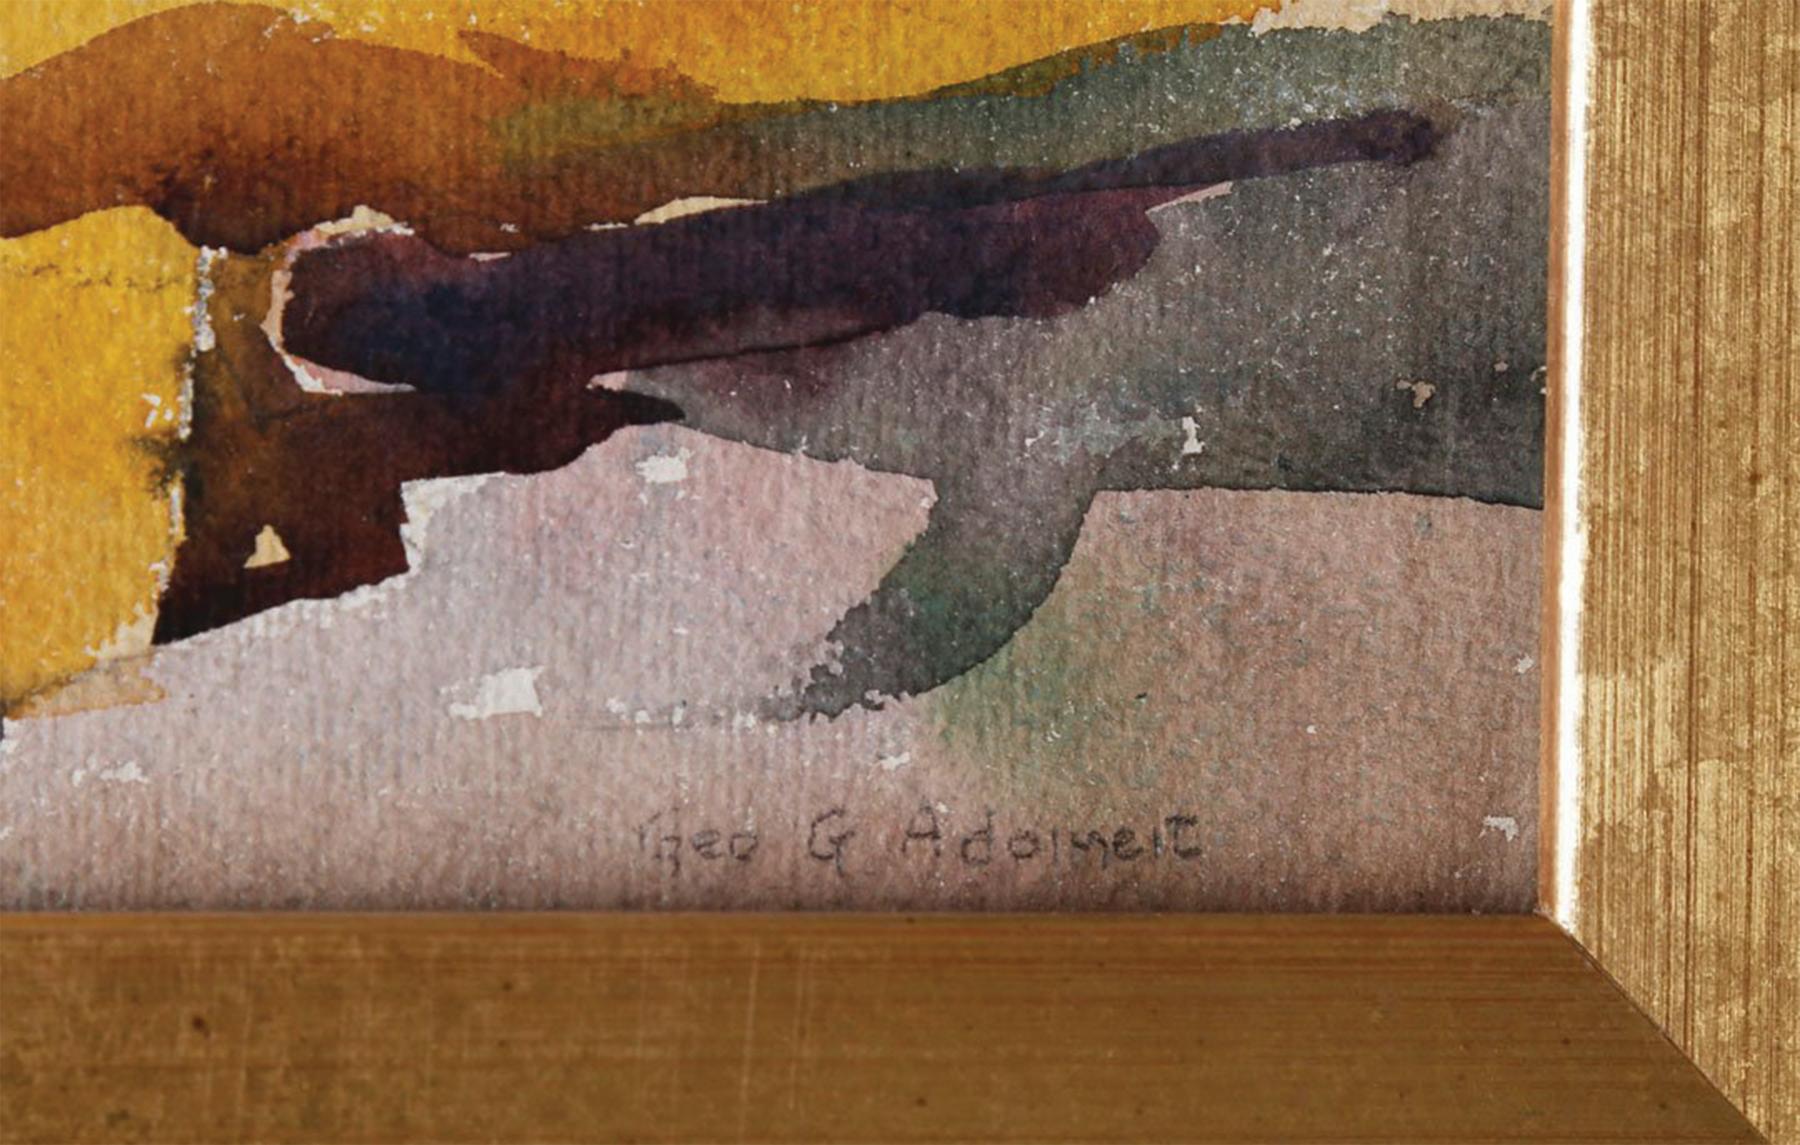 George Gustav Adomeit (américain, 1879-1967)
Beachside Village, Maine 
Aquarelle sur papier
Signé en bas à droite
10 x 14 pouces
17.75 x 21.75 pouces, encadré

Peintre majeur de scènes américaines, George AGE est né à Memel, en Allemagne, et est